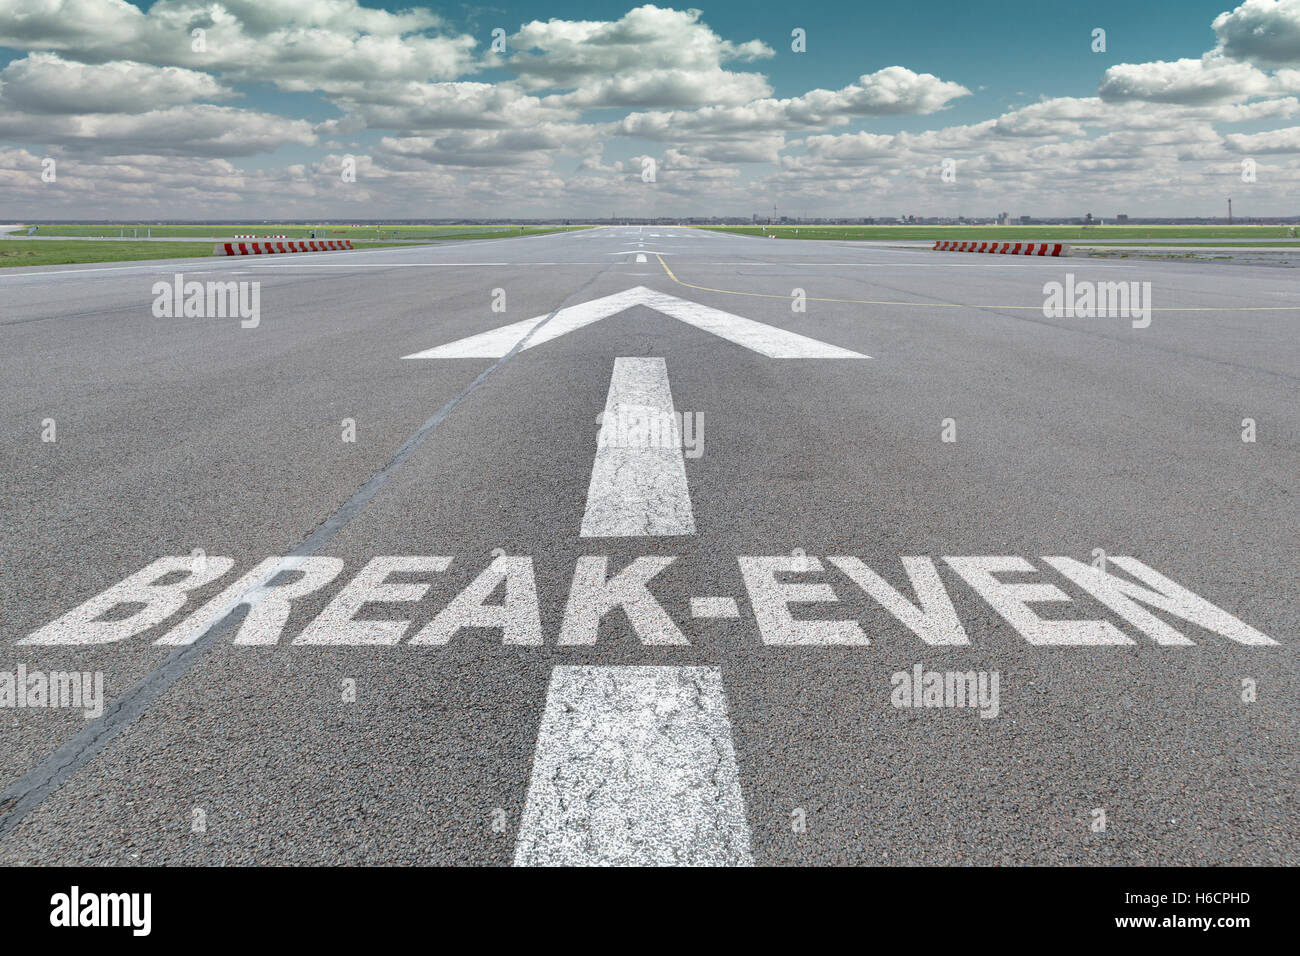 Start-und Landebahn des Flughafens mit Pfeil Leitlinie und Break-even-Buchstaben auf die Oberfläche gemalt Stockfoto